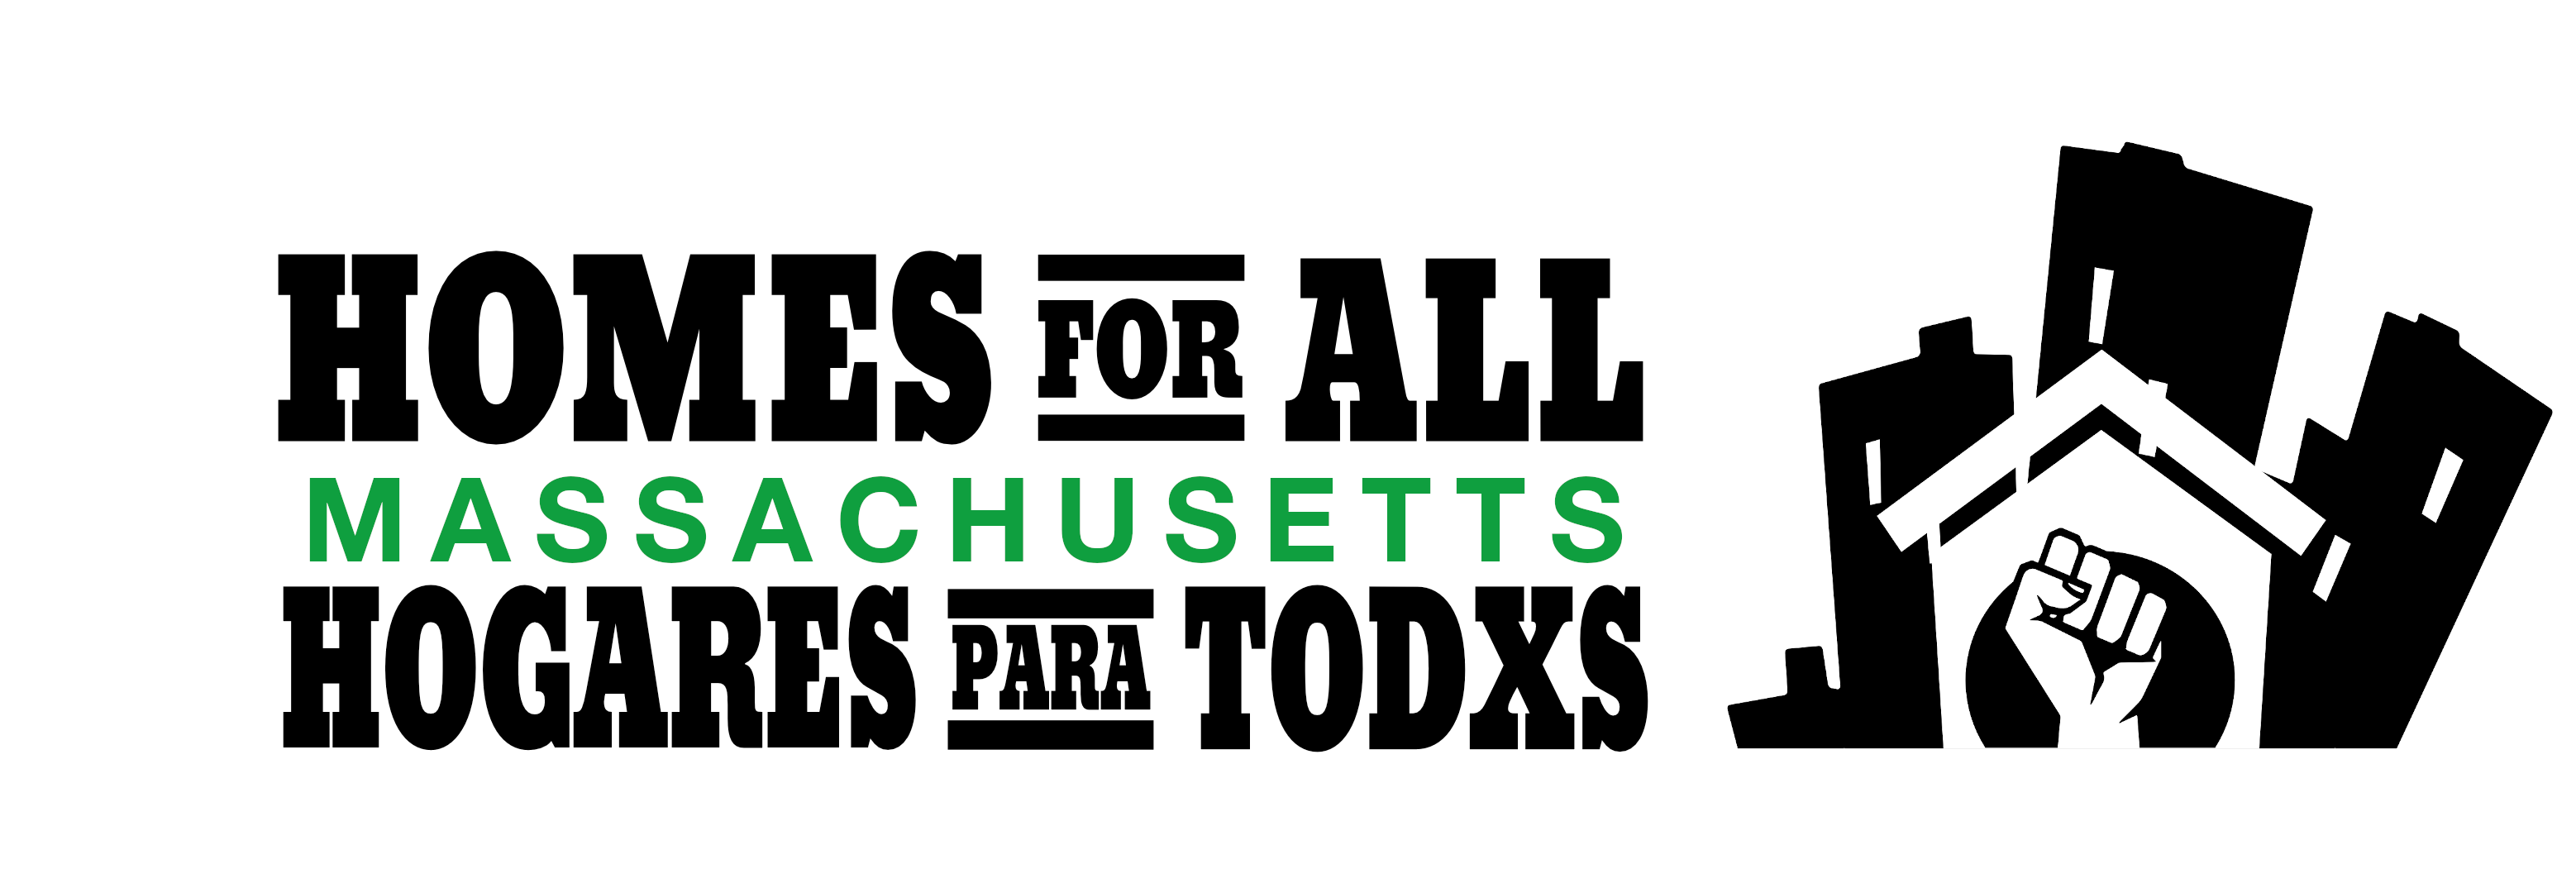 Homes for All - Massachusetts